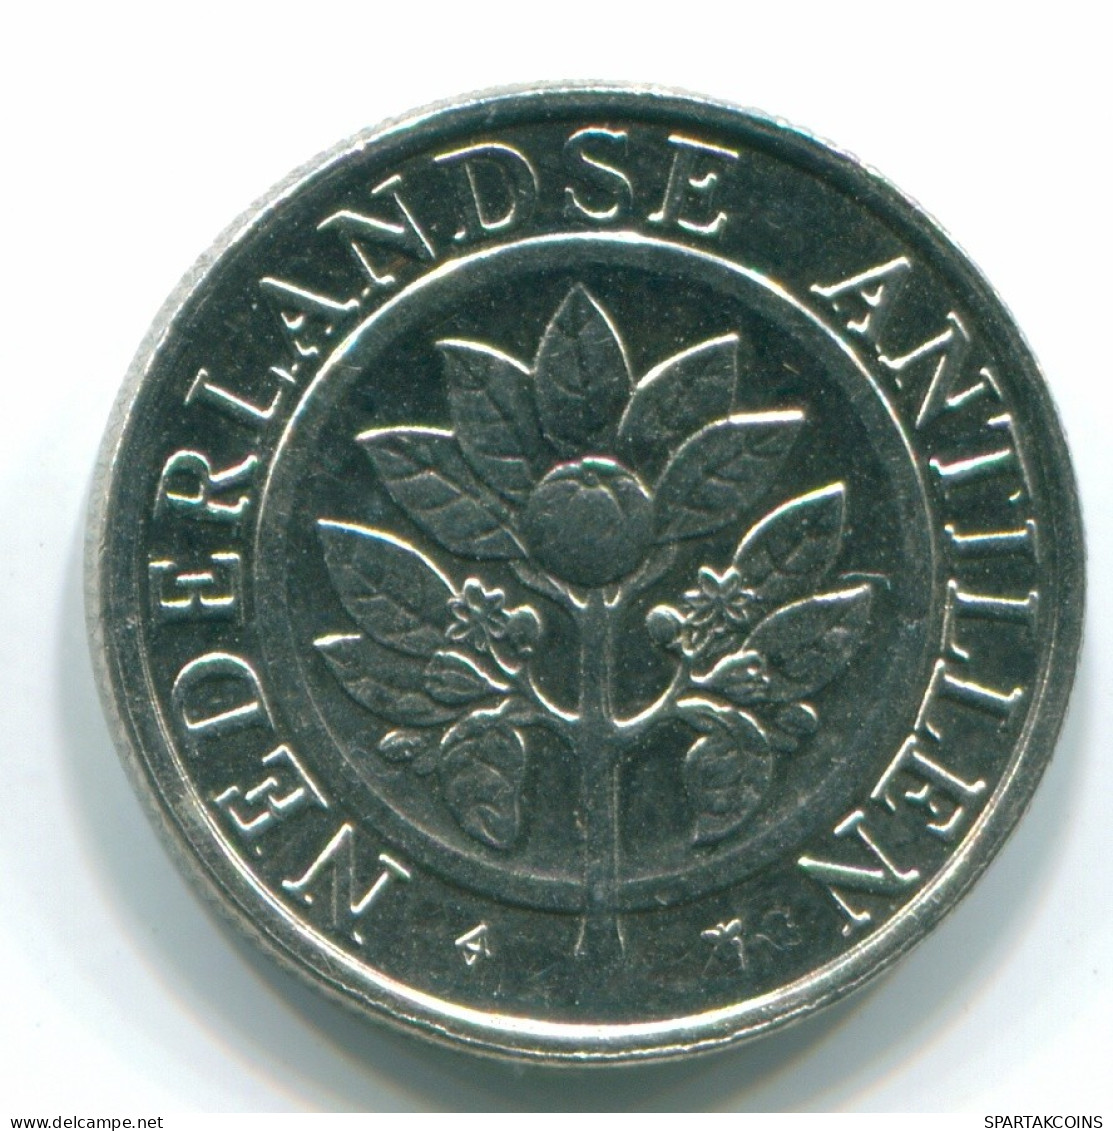 25 CENTS 1990 NETHERLANDS ANTILLES Nickel Colonial Coin #S11272.U.A - Niederländische Antillen